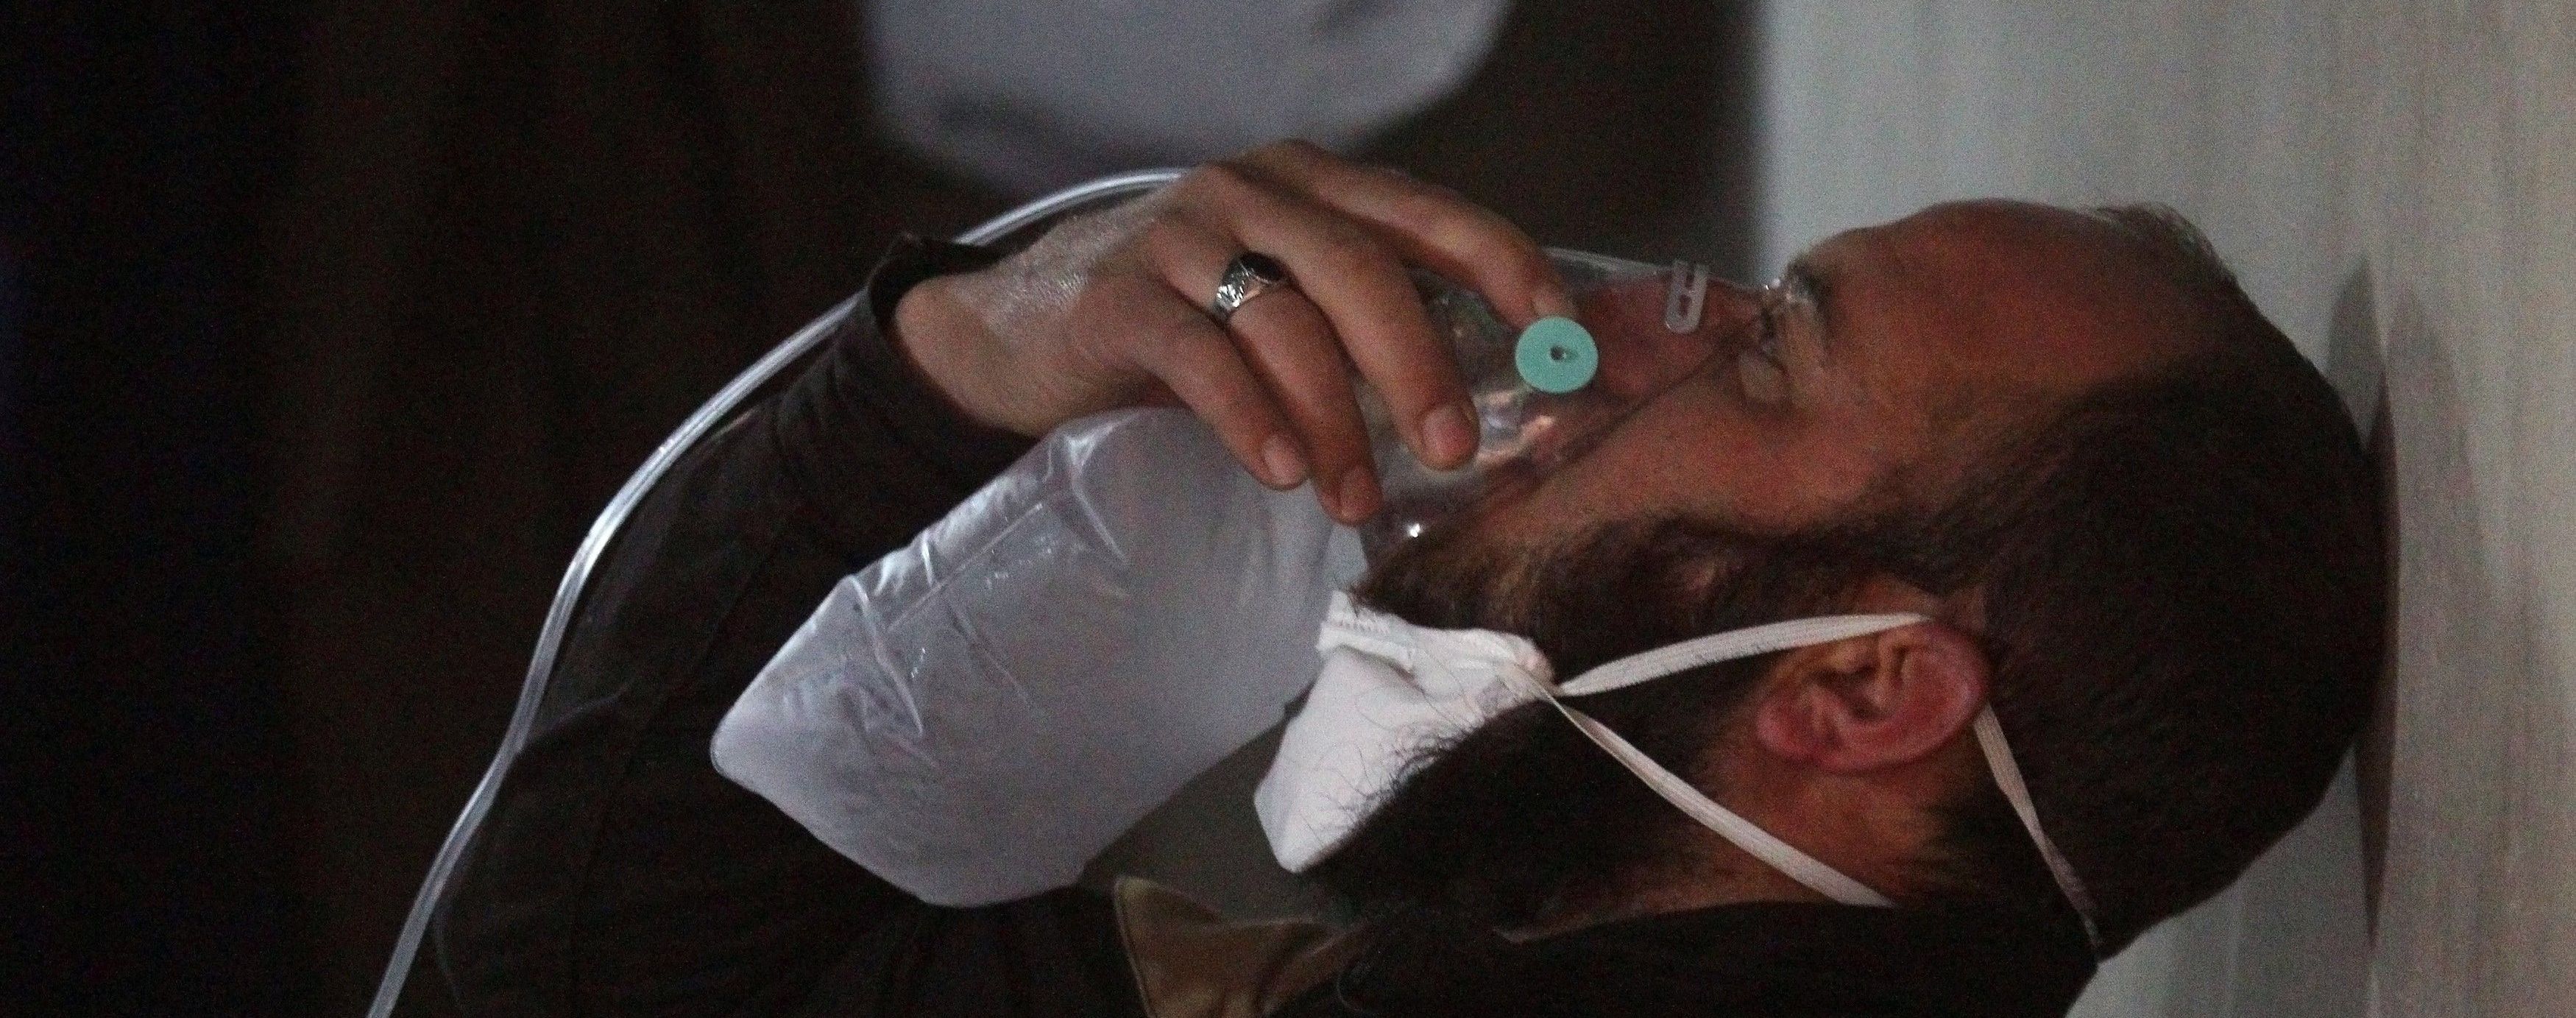 Росія визнала, що у хімічній атаці на сирійський Ідліб використовувався заборонений зарин